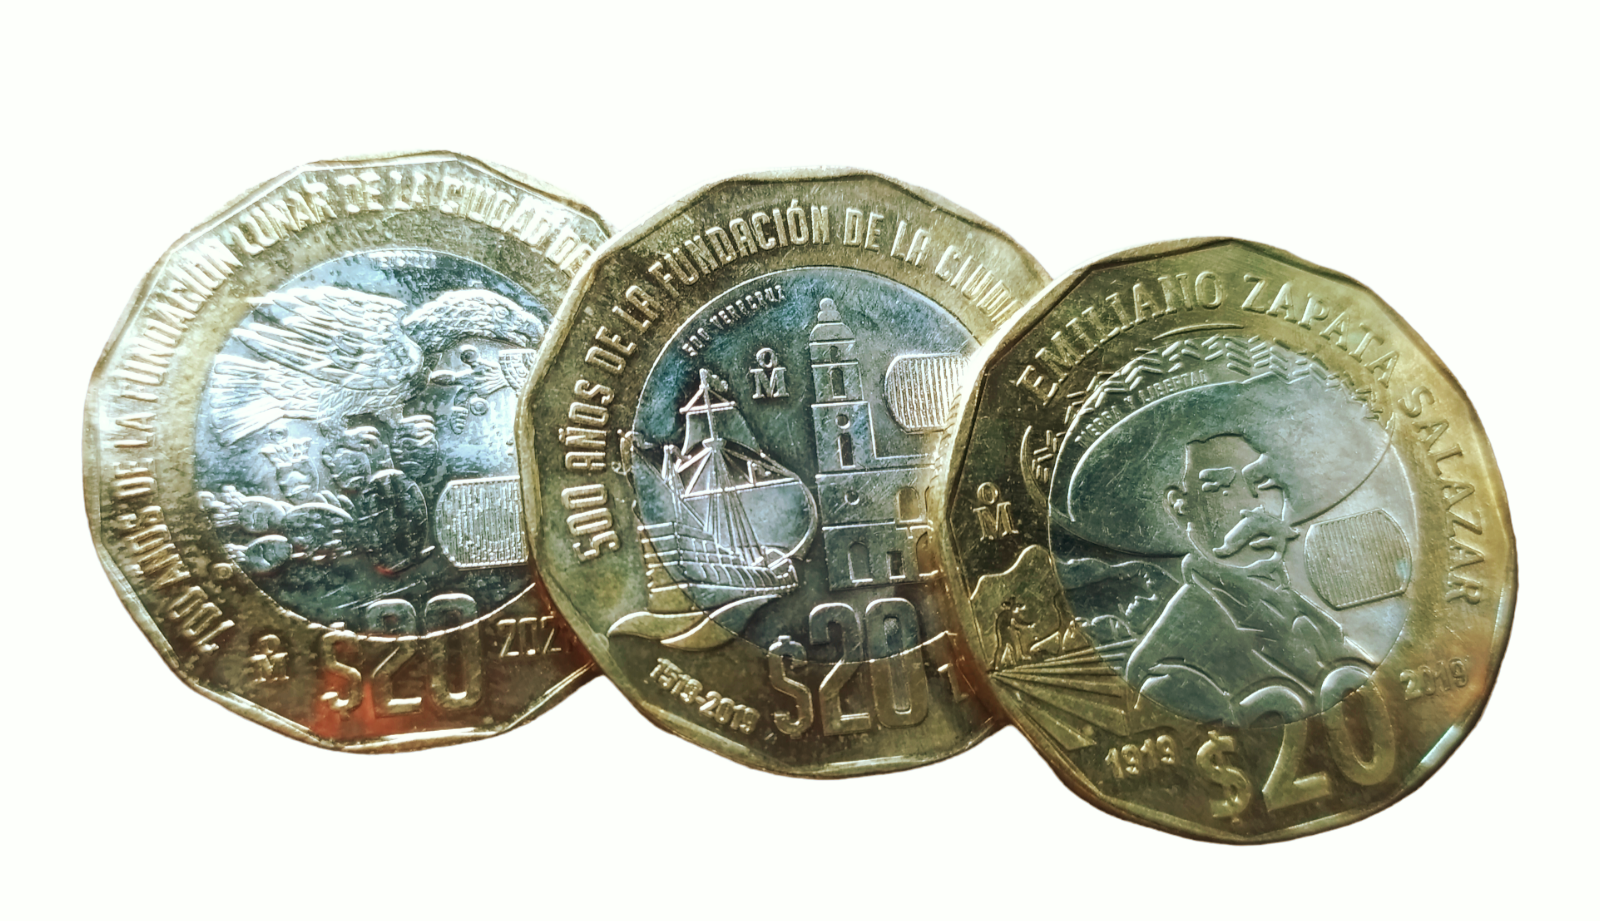 $20 pesos conmemorativas de Mexico Zapata - Veracruz y 700 años de la fundacion Без бренда - фотография #3